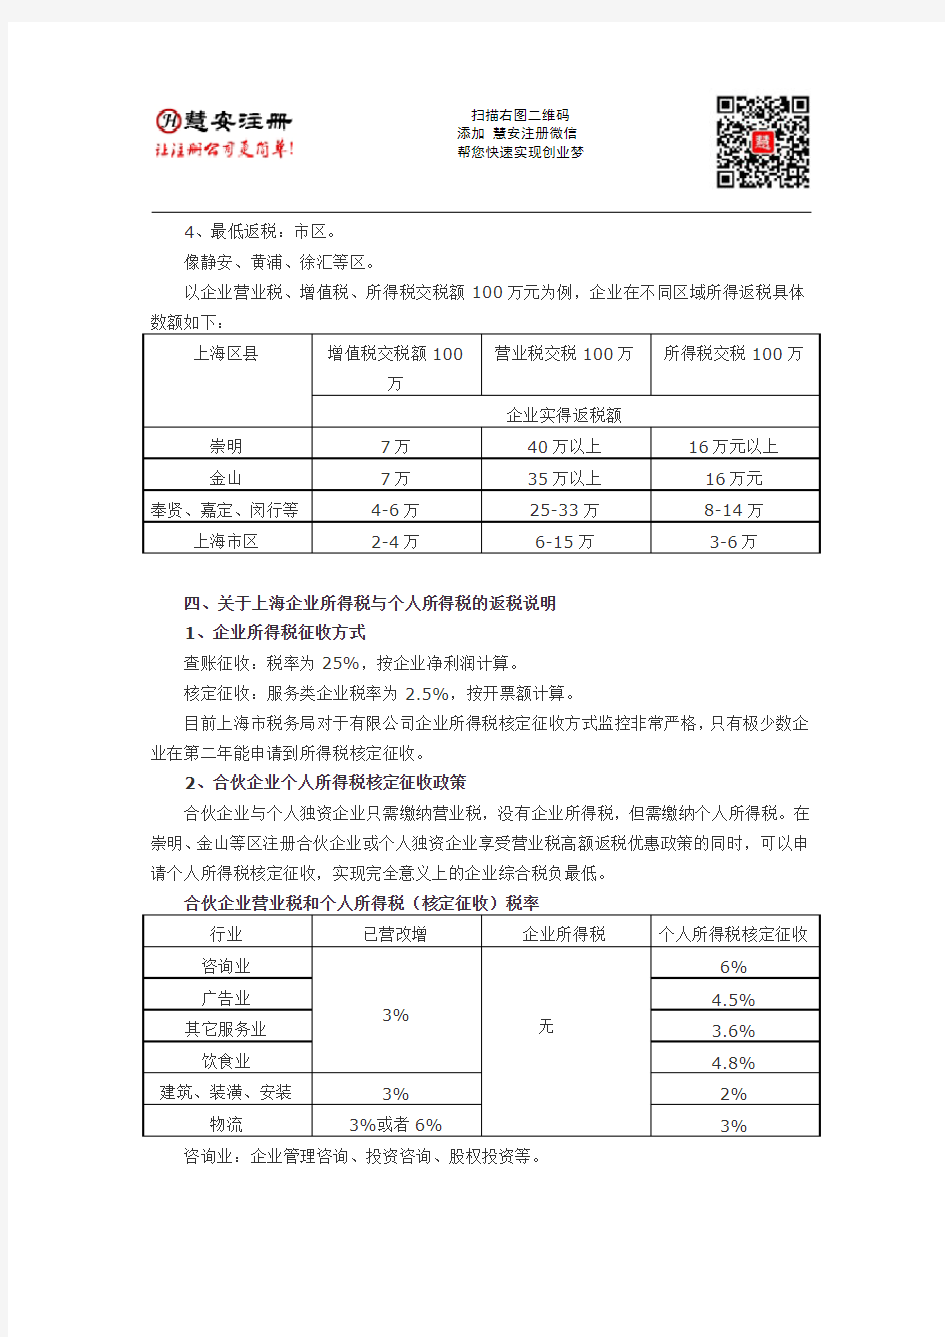 上海注册公司税收优惠政策(2016年)